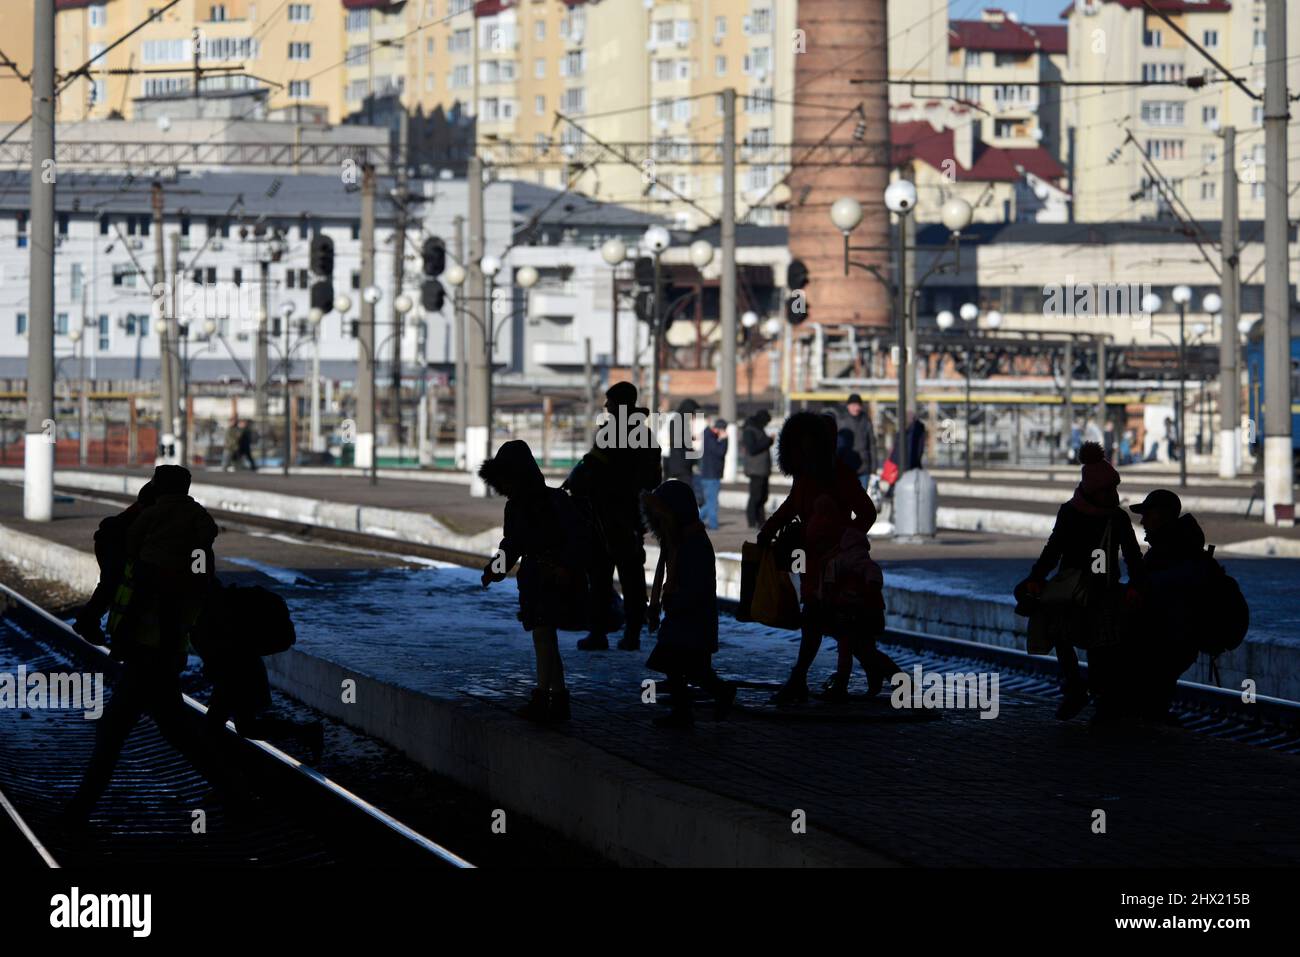 LVIV, UKRAINE - 28. FEBRUAR 2022 - die Silhouetten von Menschen werden am Bahnhof von Lviv als Flüchtlinge vor Feindseligkeiten an Bord Evakuierung tr gesehen Stockfoto